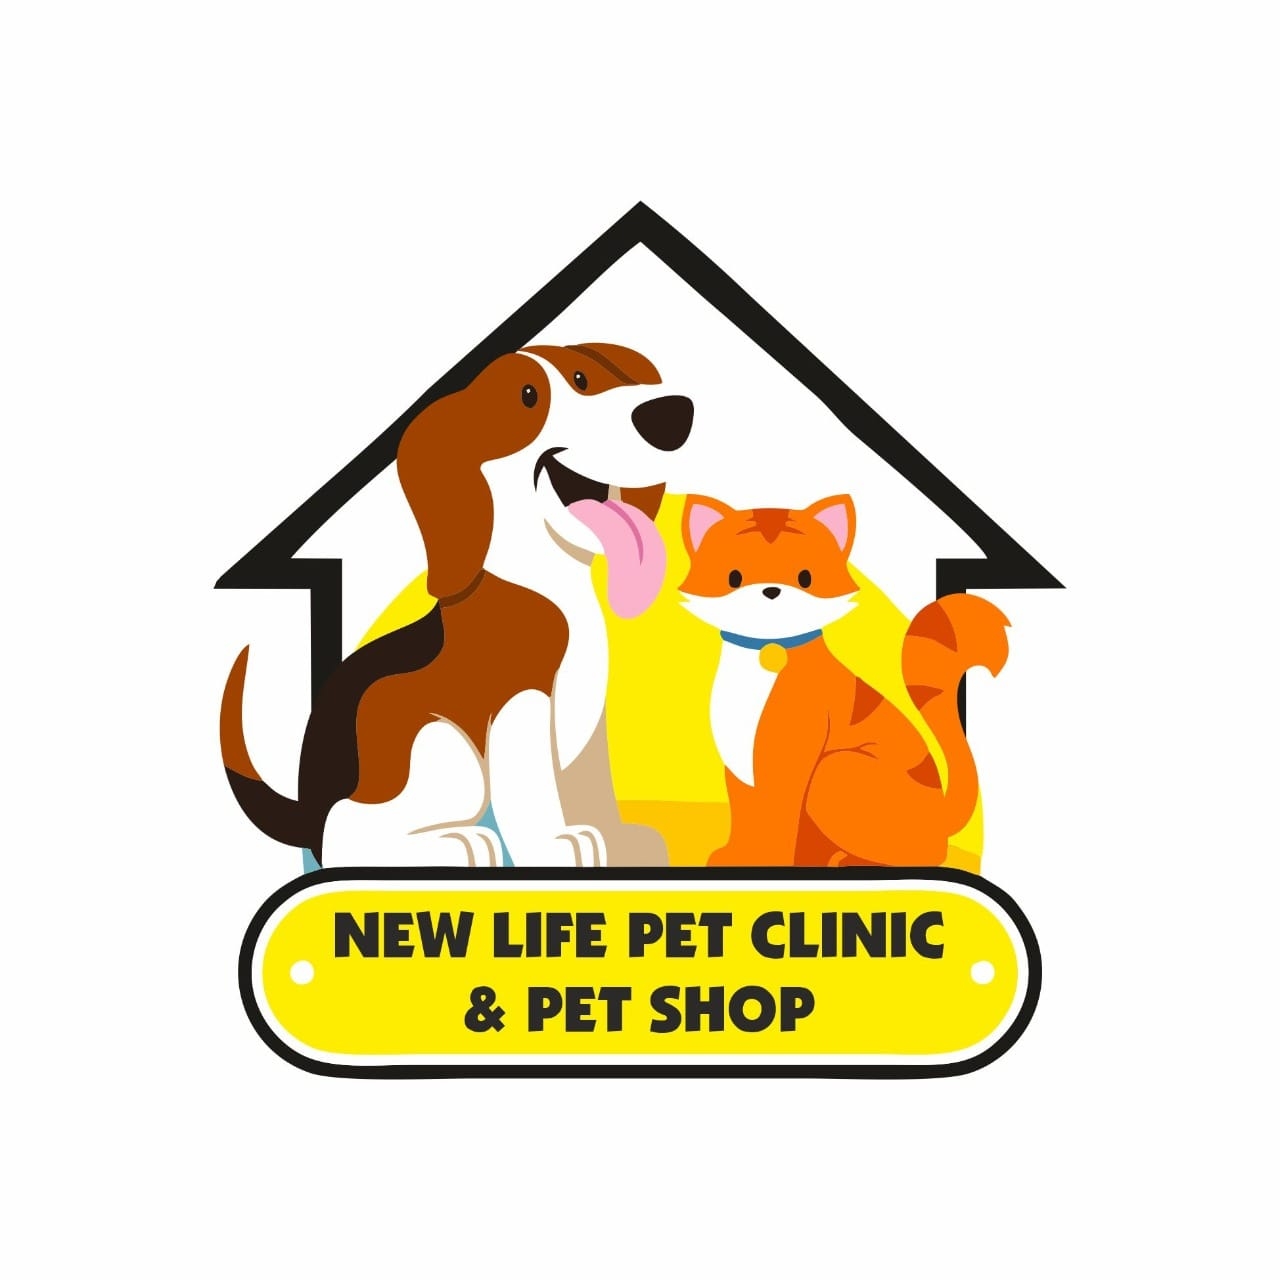 New life pet clinic & pet shop - Logo